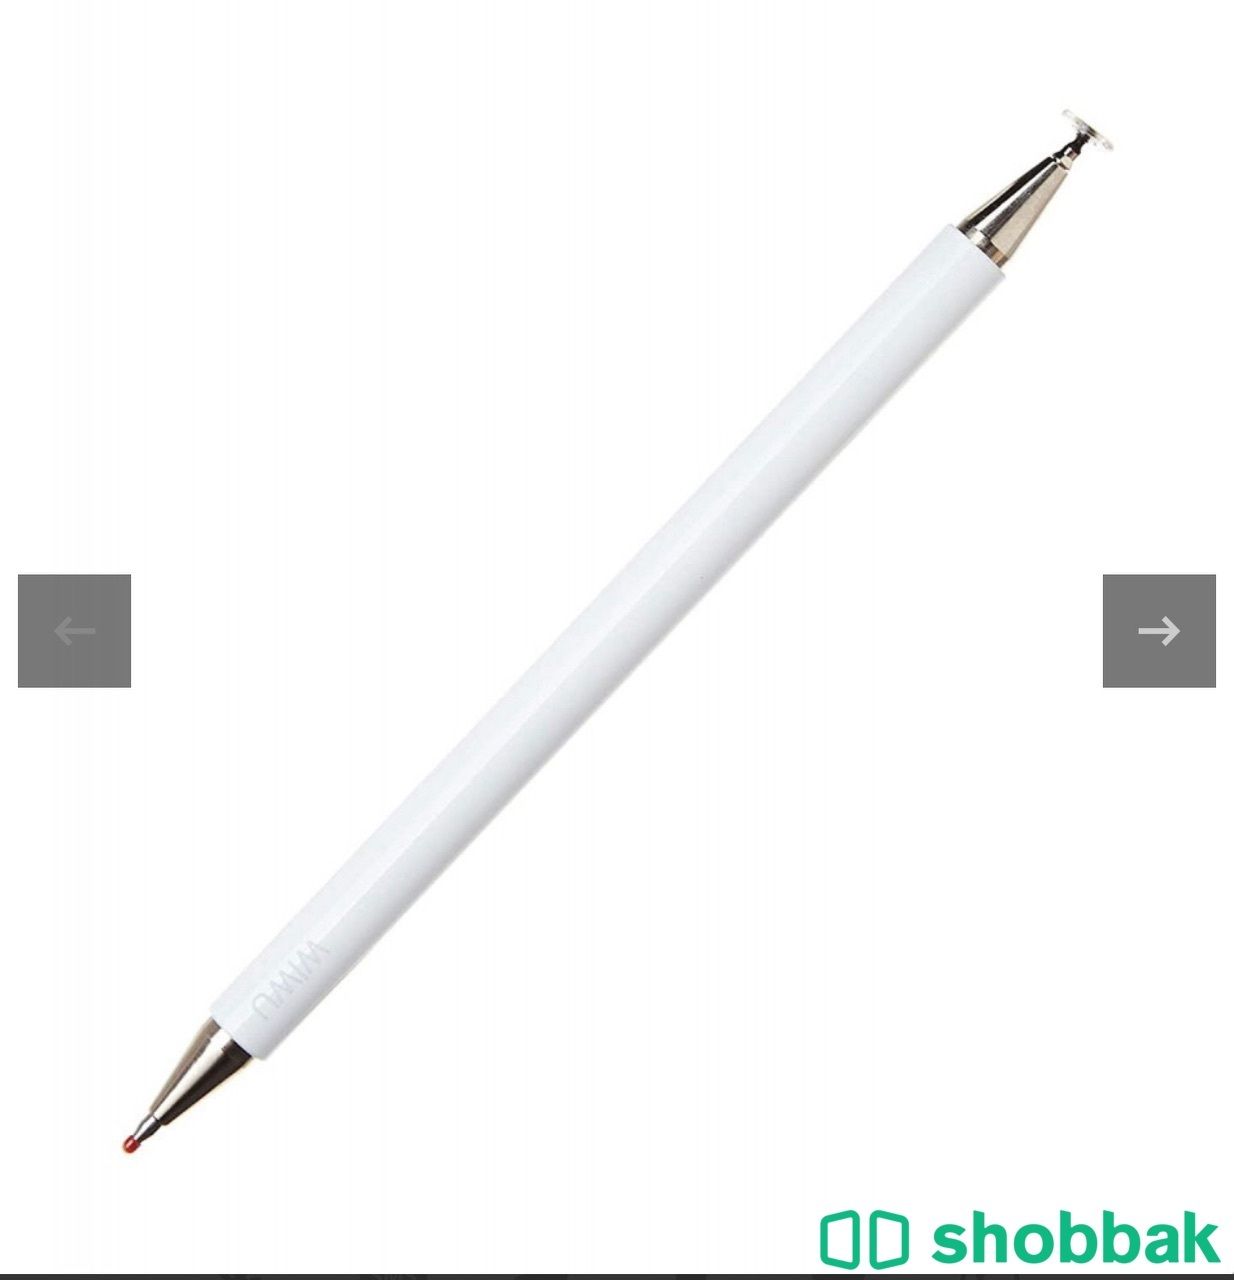 قلم لمس ذكي بينسيل ون ٢ في ١ باسيف مع غطاء حمايه  شباك السعودية